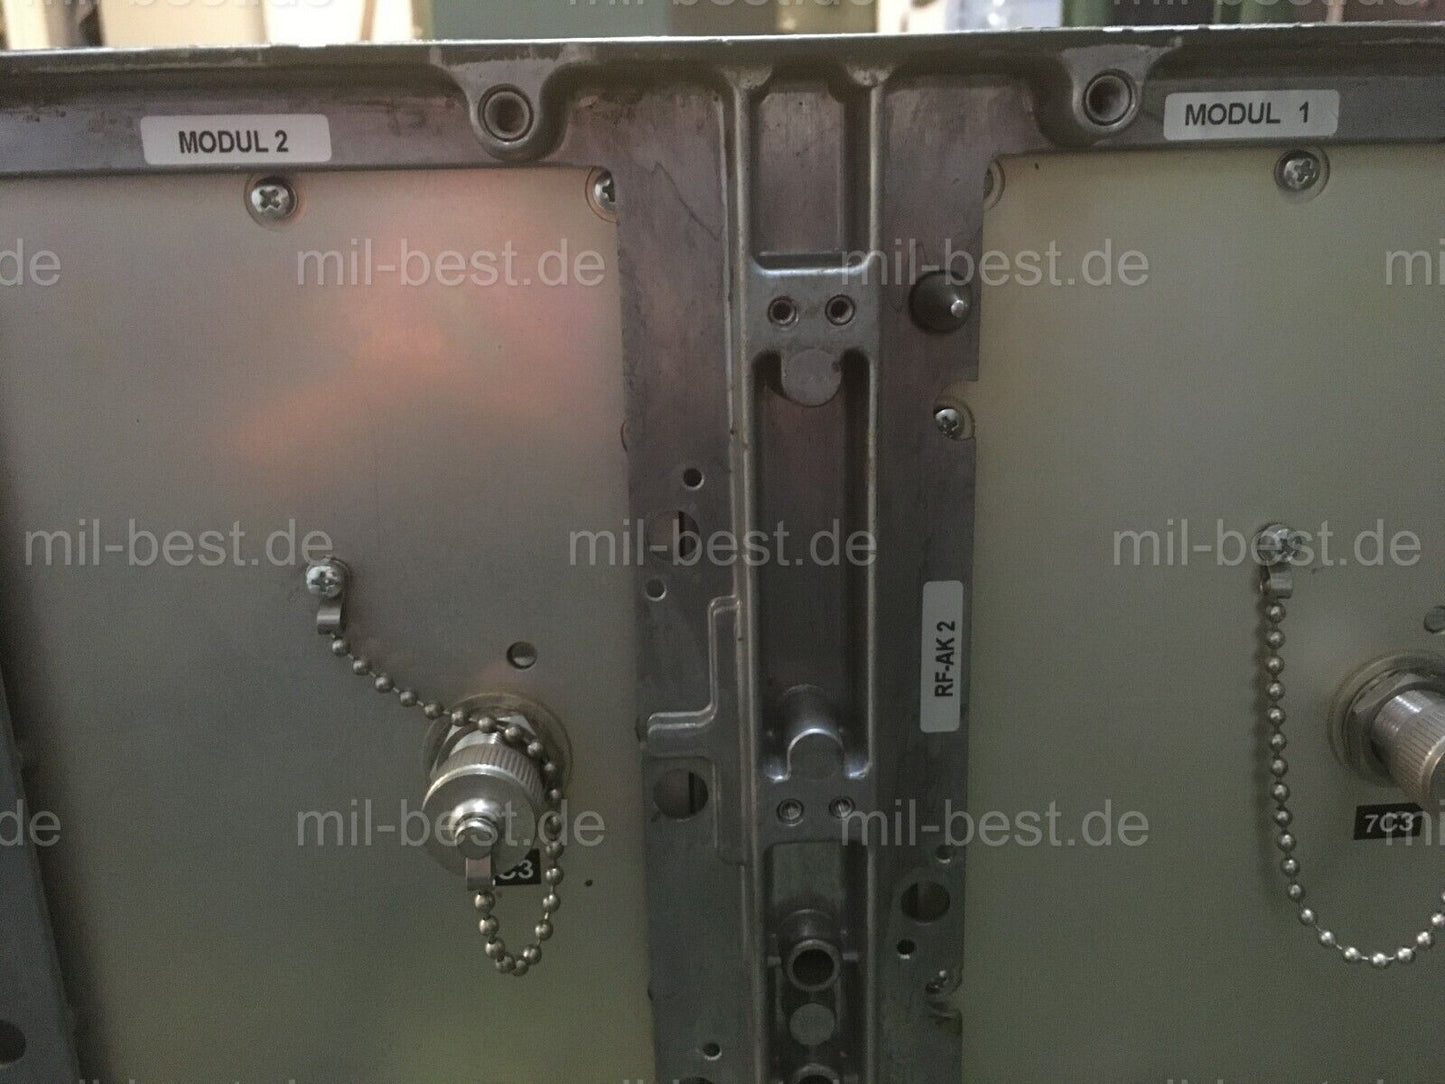 2 Stück Anschaltkasten Richtfunk FM15000 im Einschub Funkgerät Bundeswehr Kabine